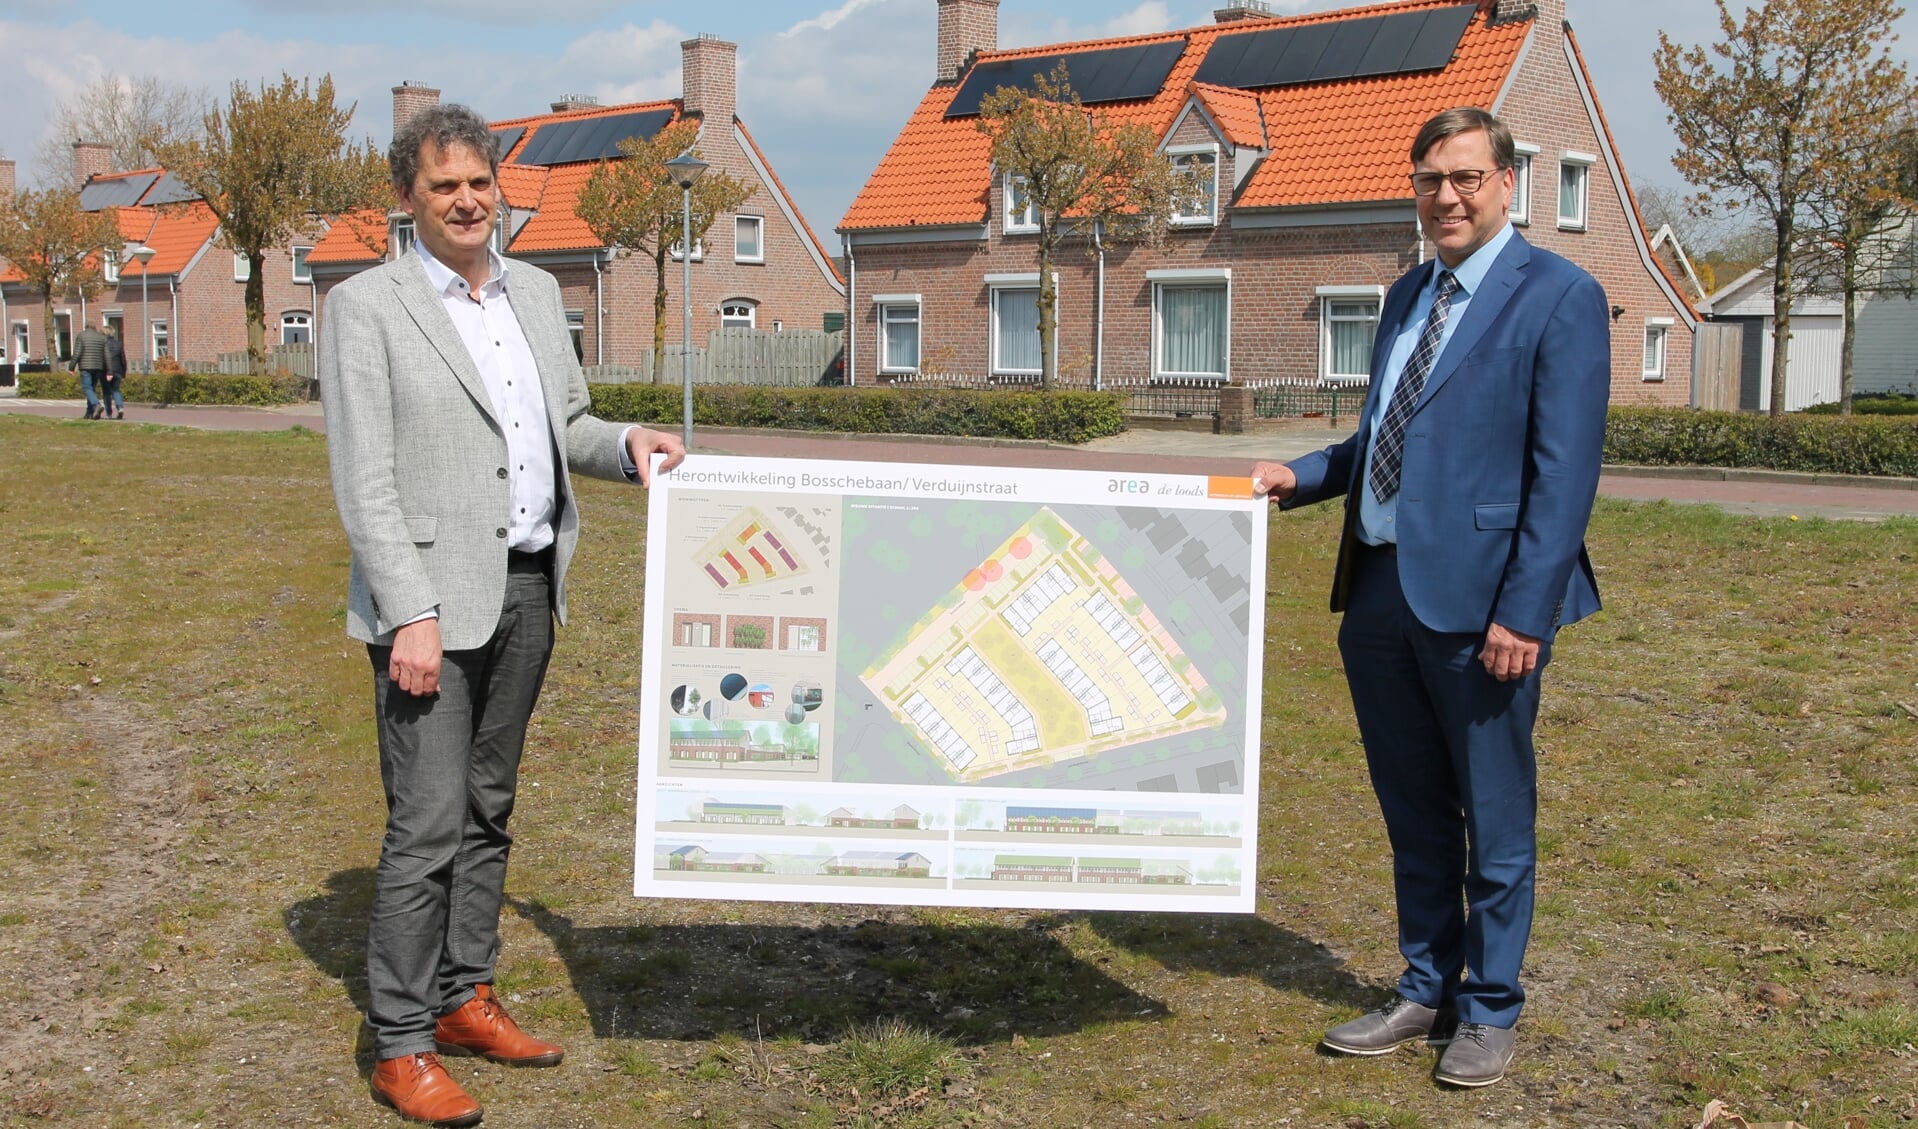 Jan van Vucht en Franko van Lankvelt op de plek van de nieuwbouwplannen.